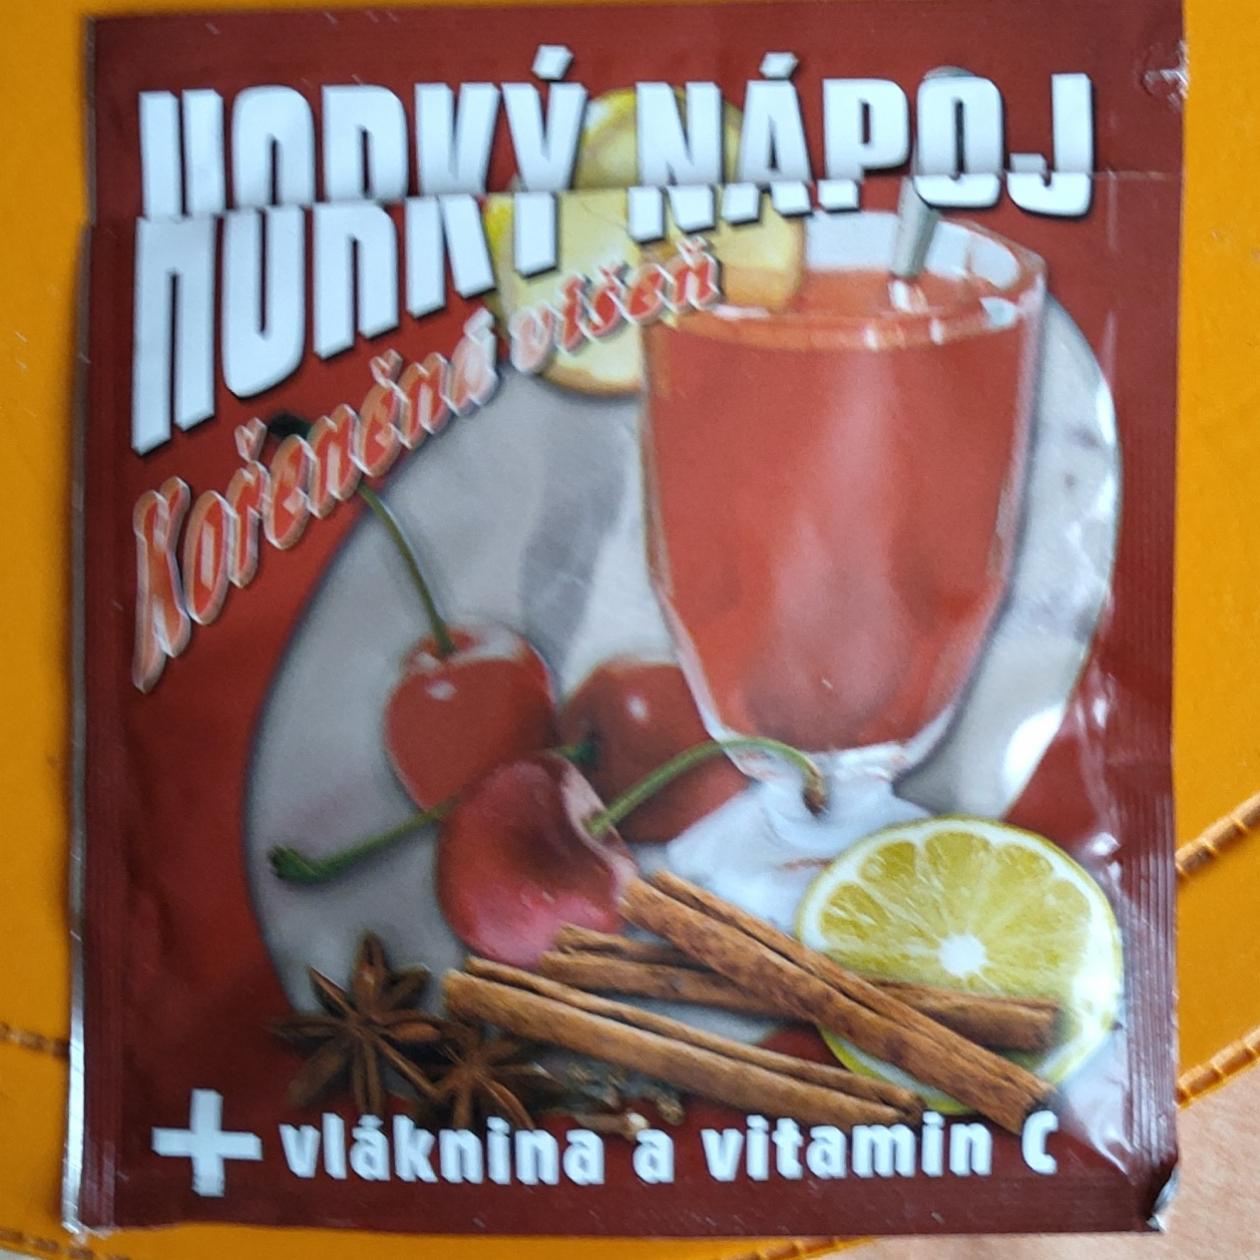 Fotografie - horký nápoj v prášku Kořeněná višeň, vláknina a vitamin C